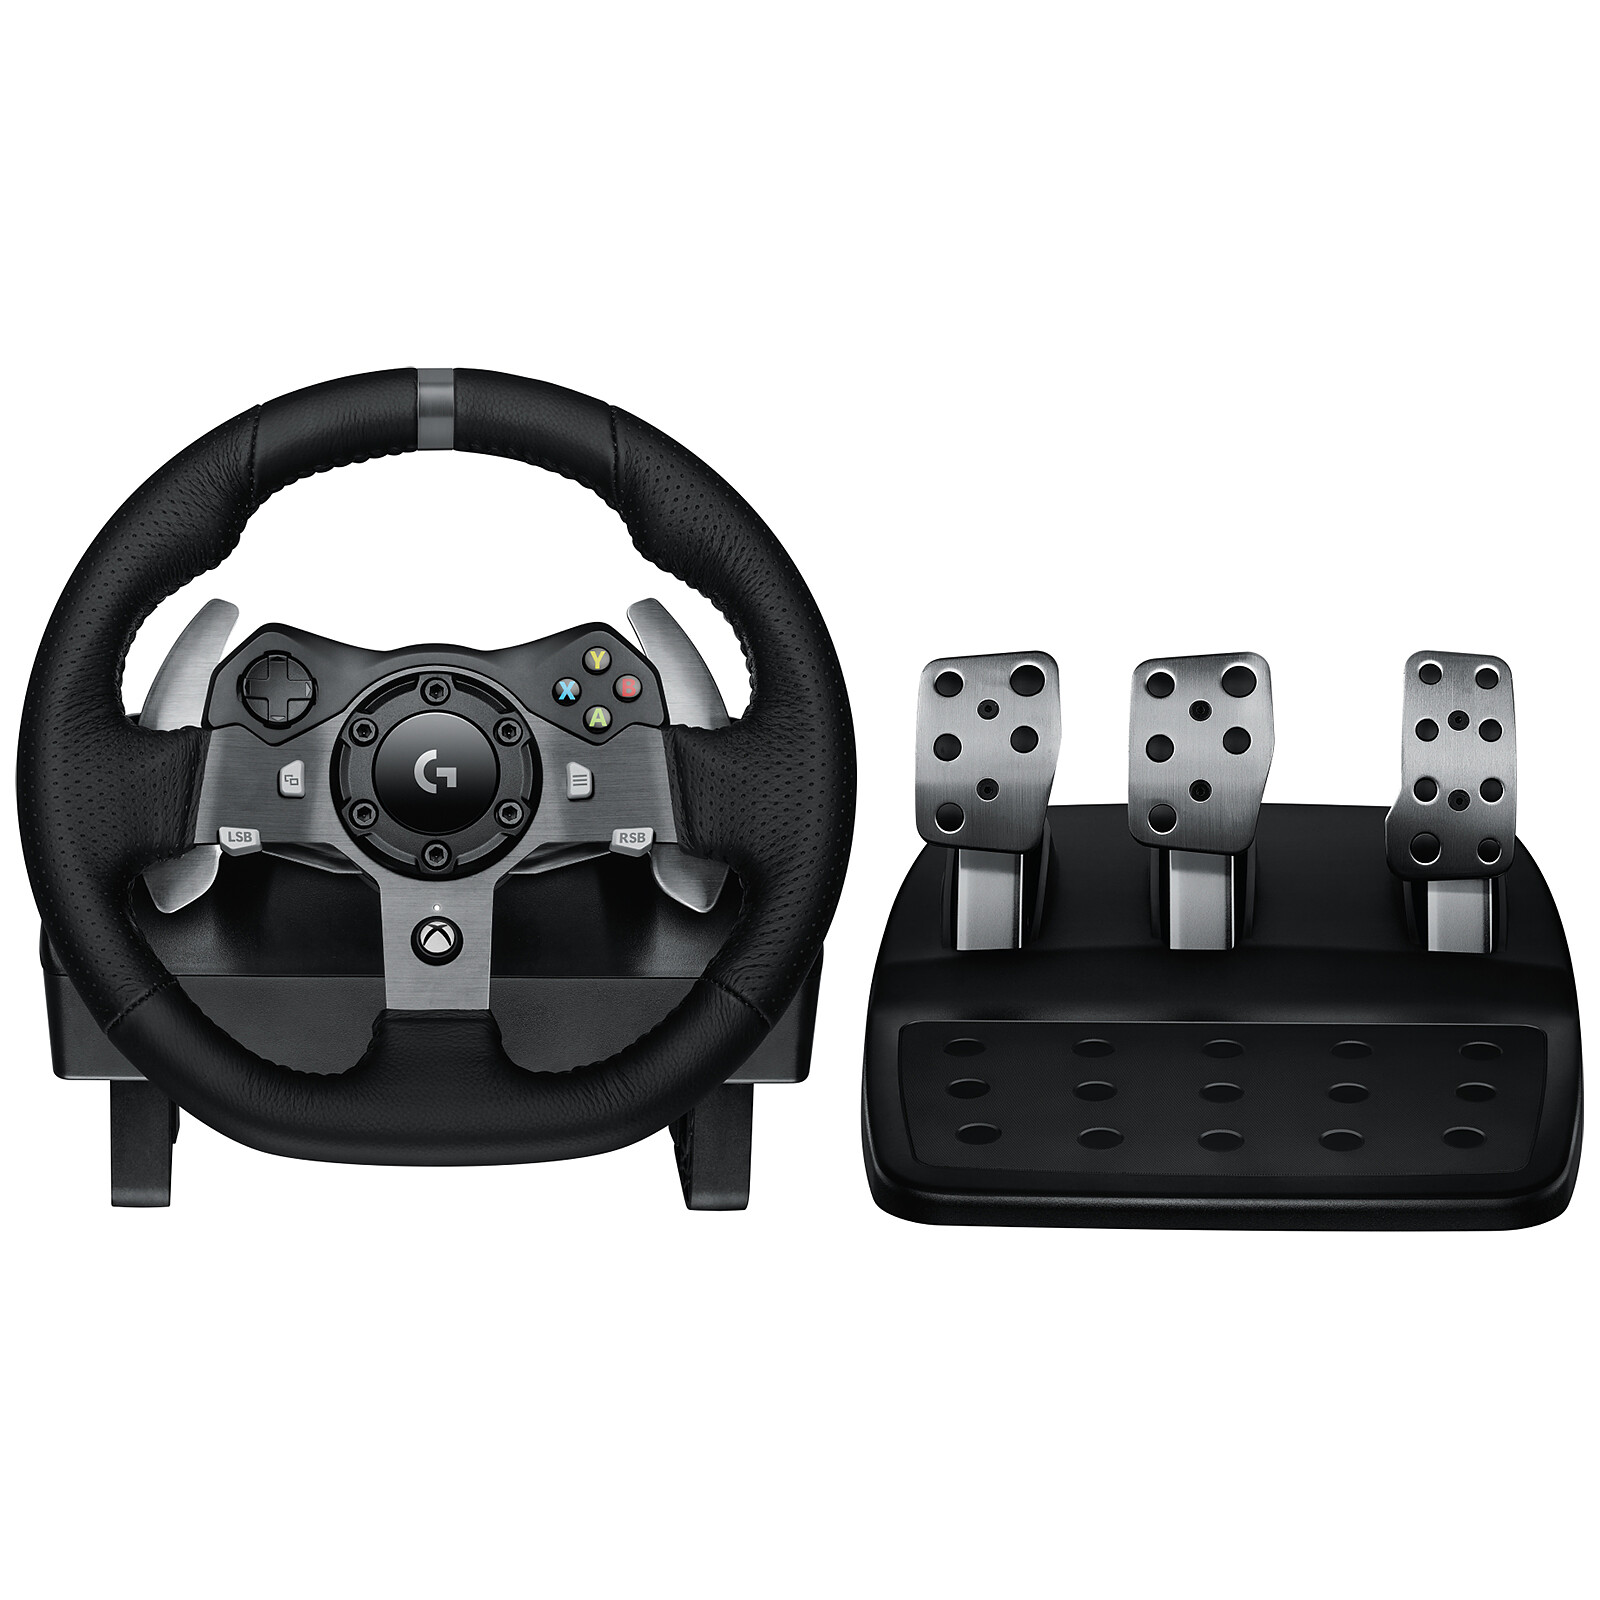 Logitech G920 Driving Force Racing Wheel - Volant PC - Garantie 3 ans LDLC  - Coin des affaires